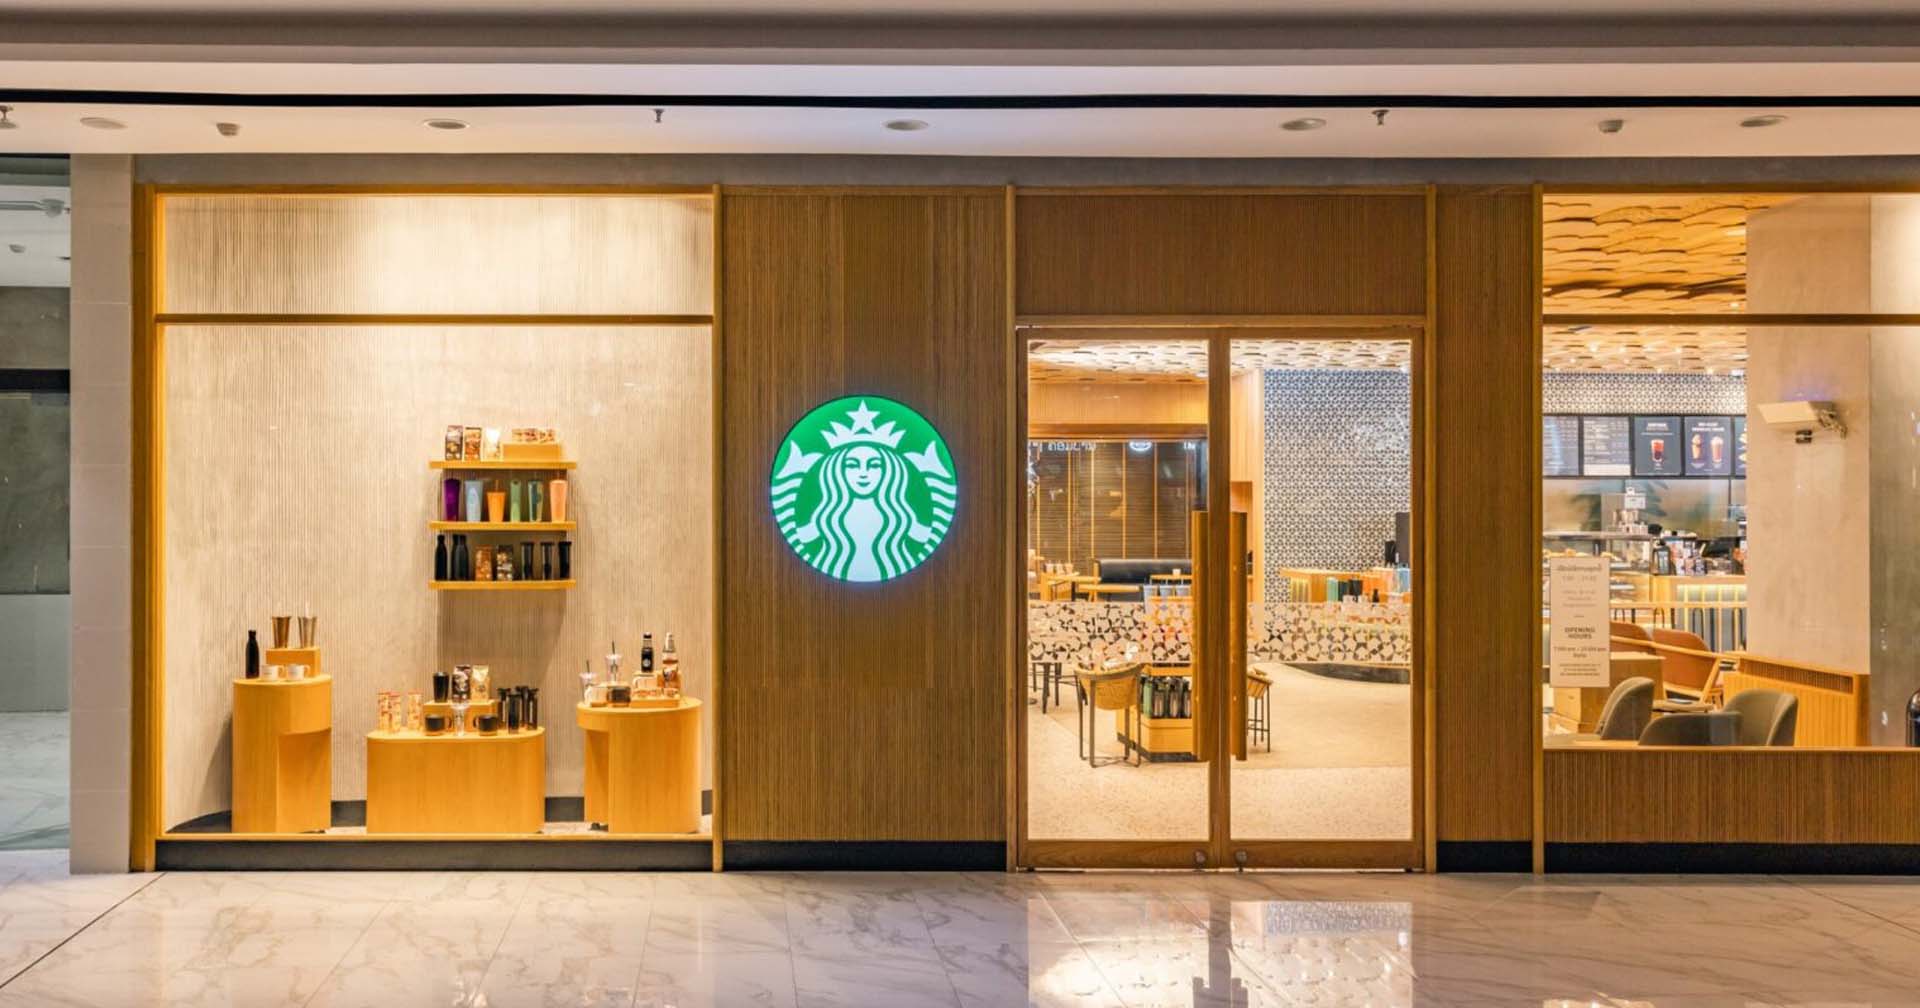 แบงก์ร้อยมีทอน! Starbucks เปิดสาขาแรกใน สปป.ลาว พร้อมเมนูราคาเริ่มต้น 60 บาท